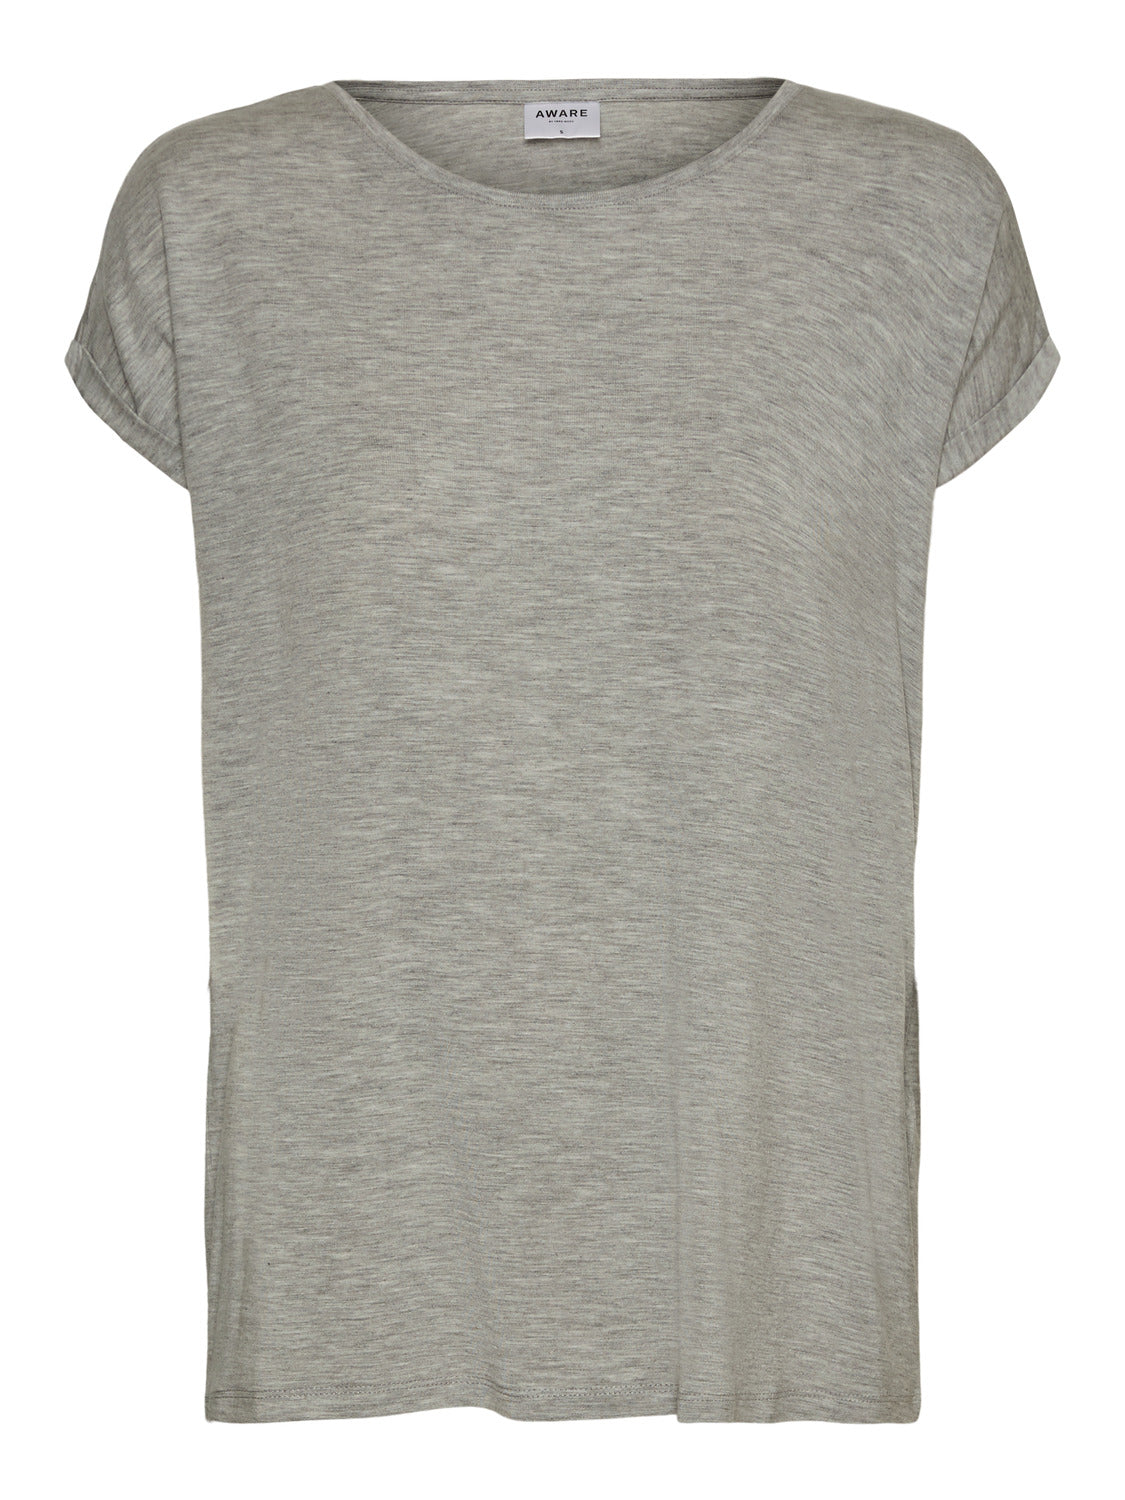 VMAVA T-Shirt - Light Melange MODA VERO – Lidköping Grey